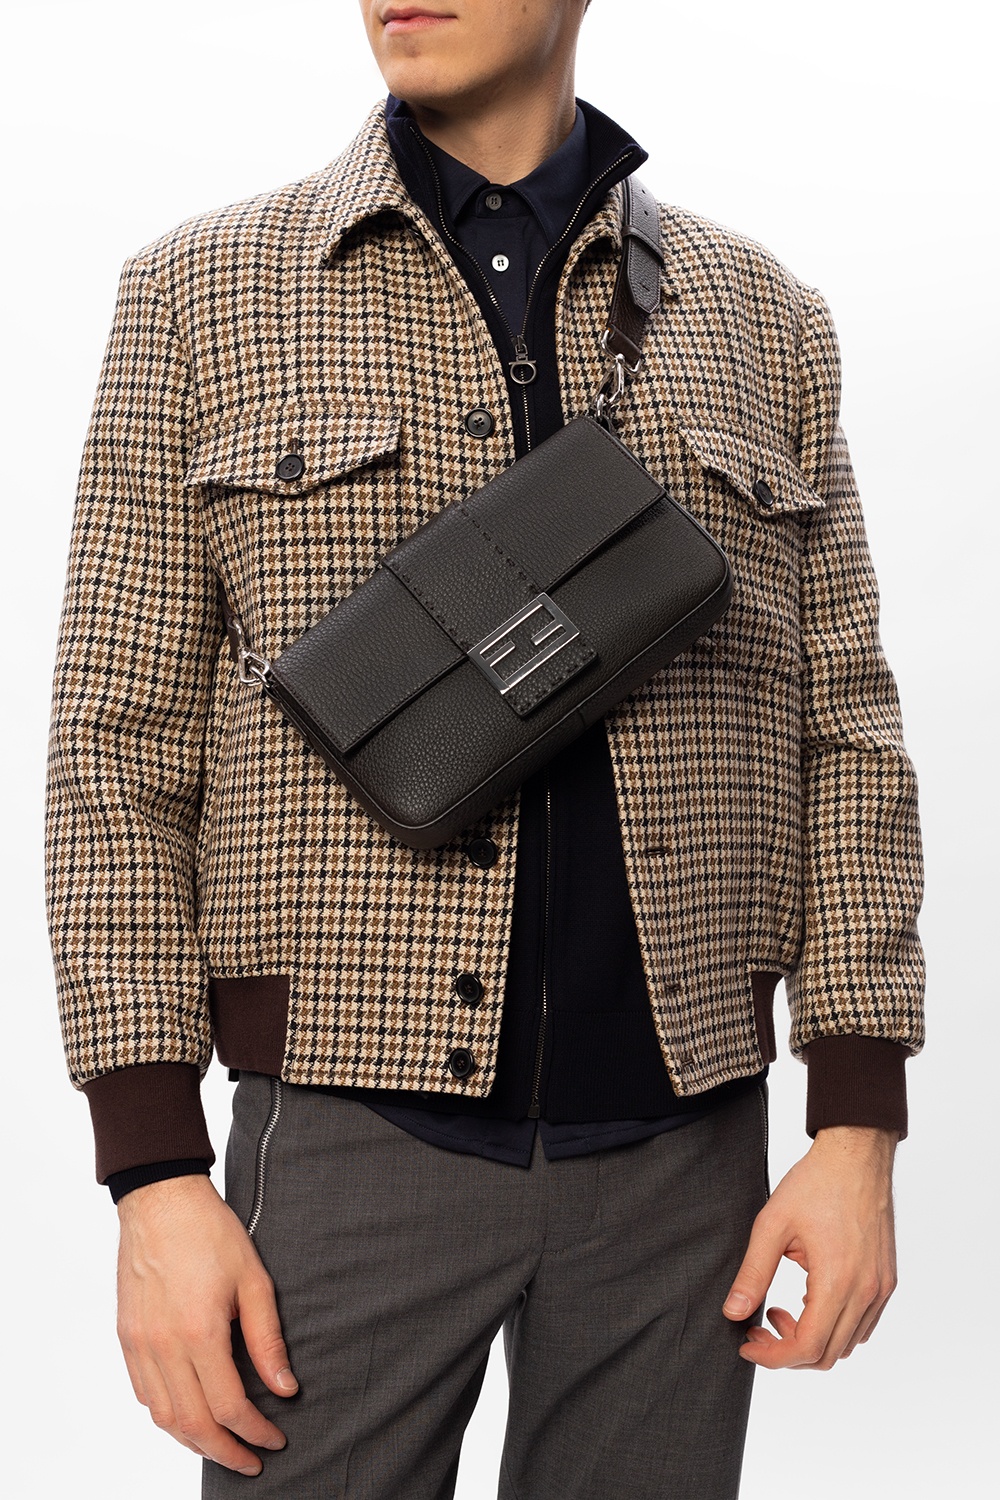 Fendi Flat Baguette Leather Messenger Bag for Men